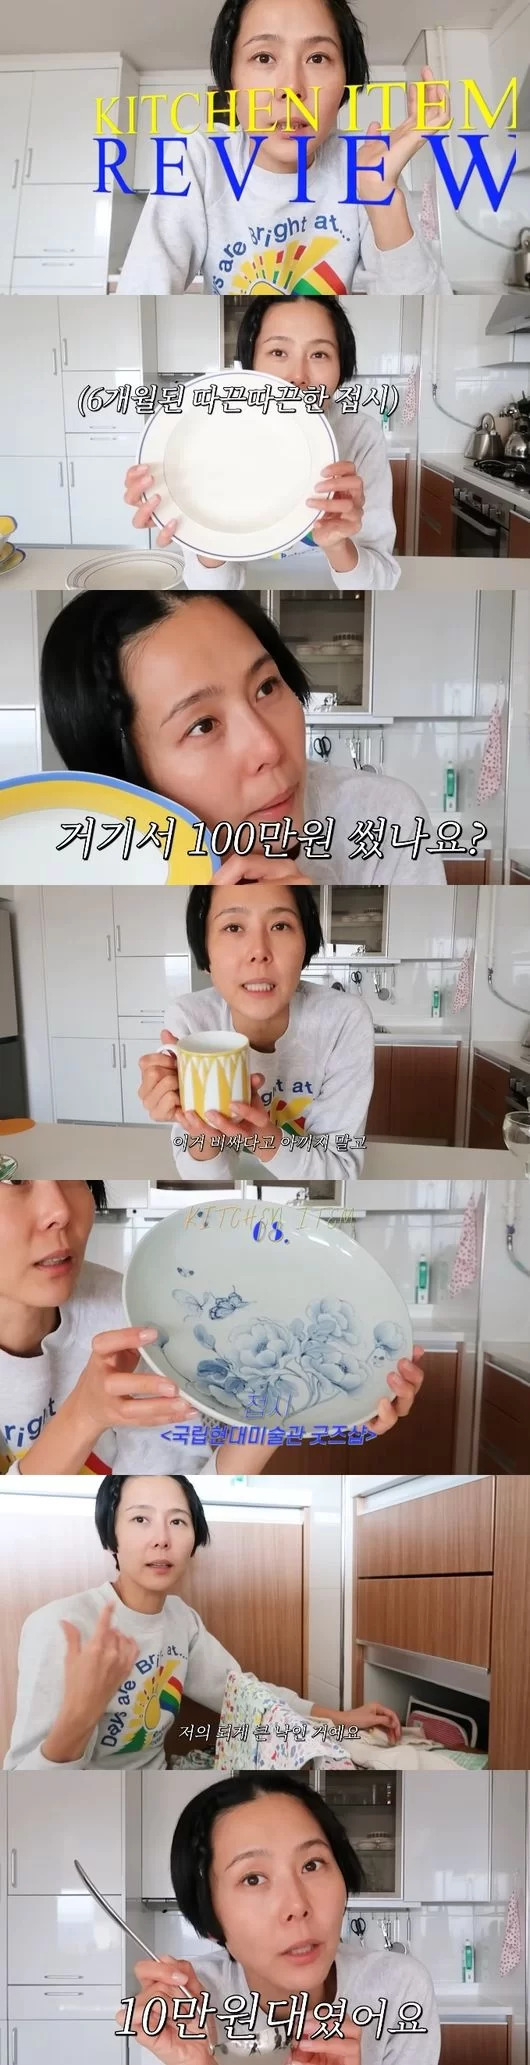 유튜브 ‘김나영의 nofilterTV’